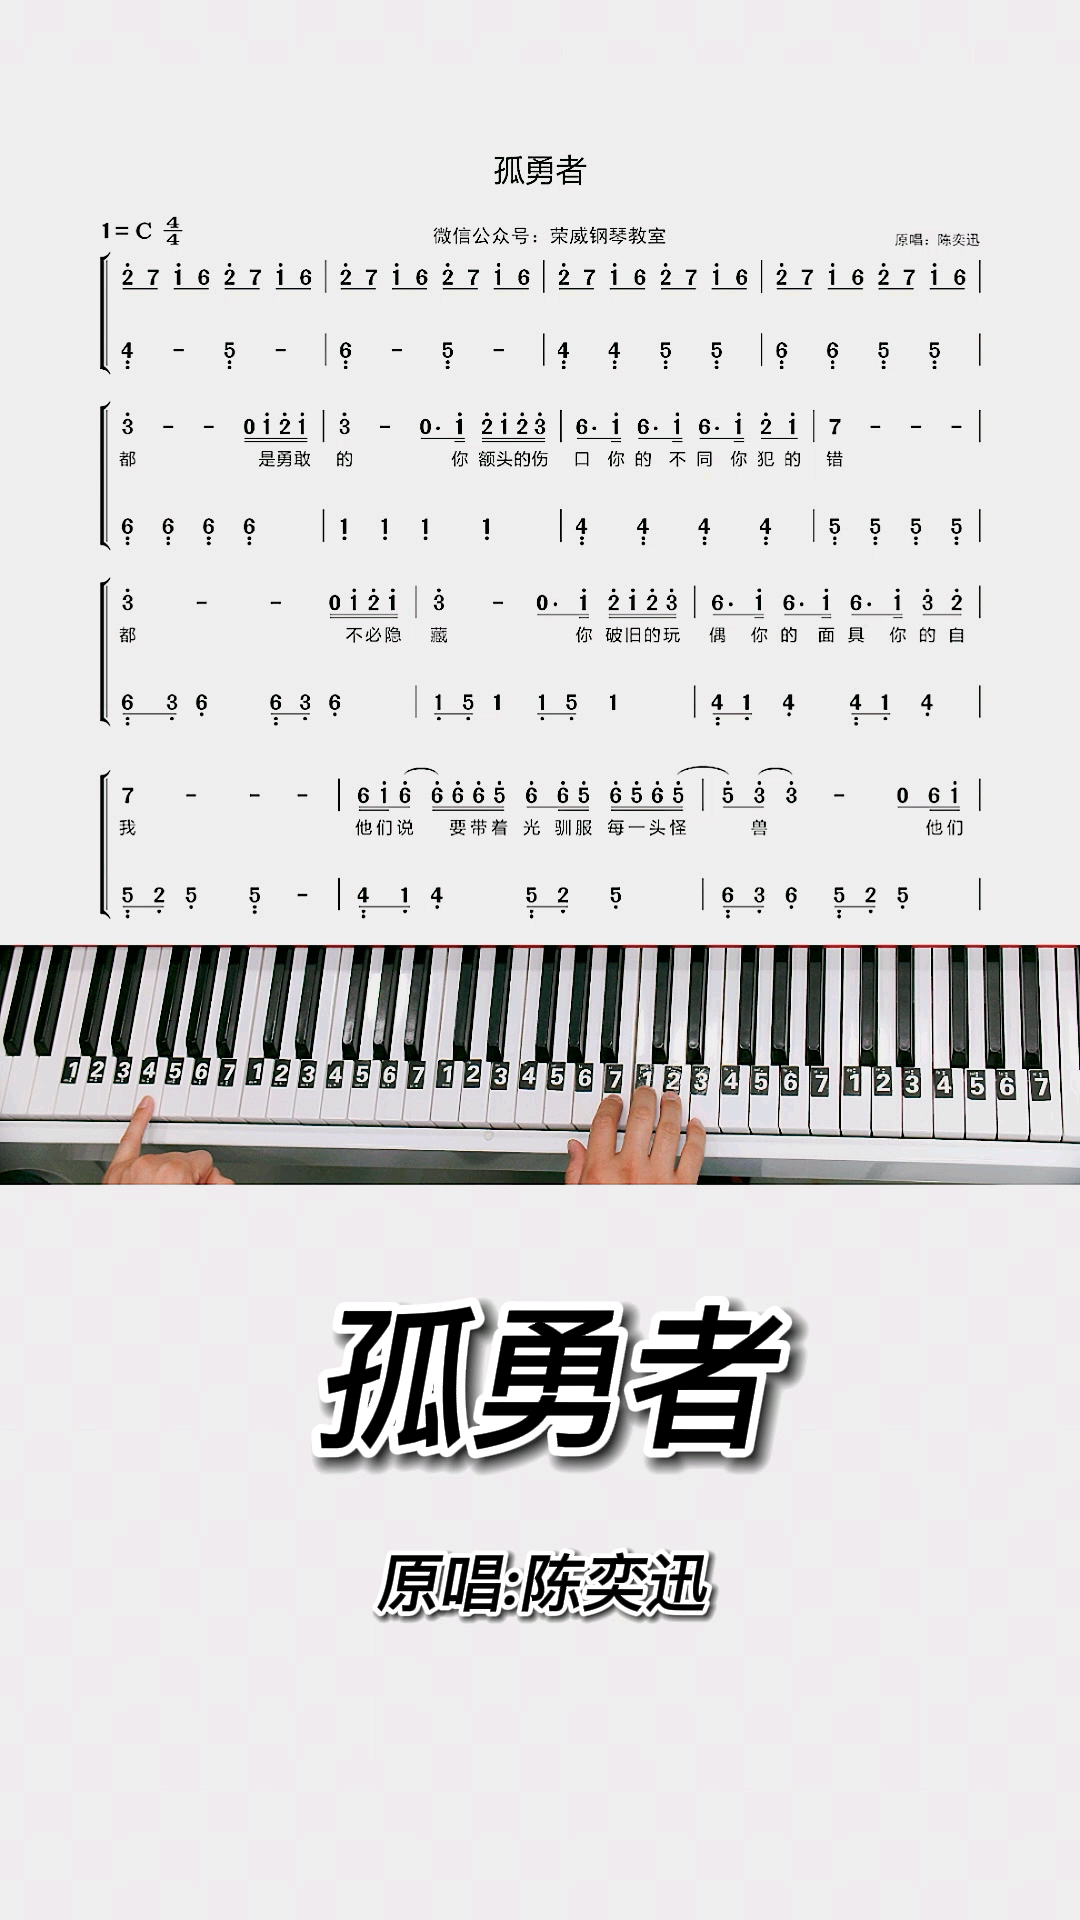 孤勇者钢琴教学零基础版双手钢琴简谱教程来咯完整版已搞定